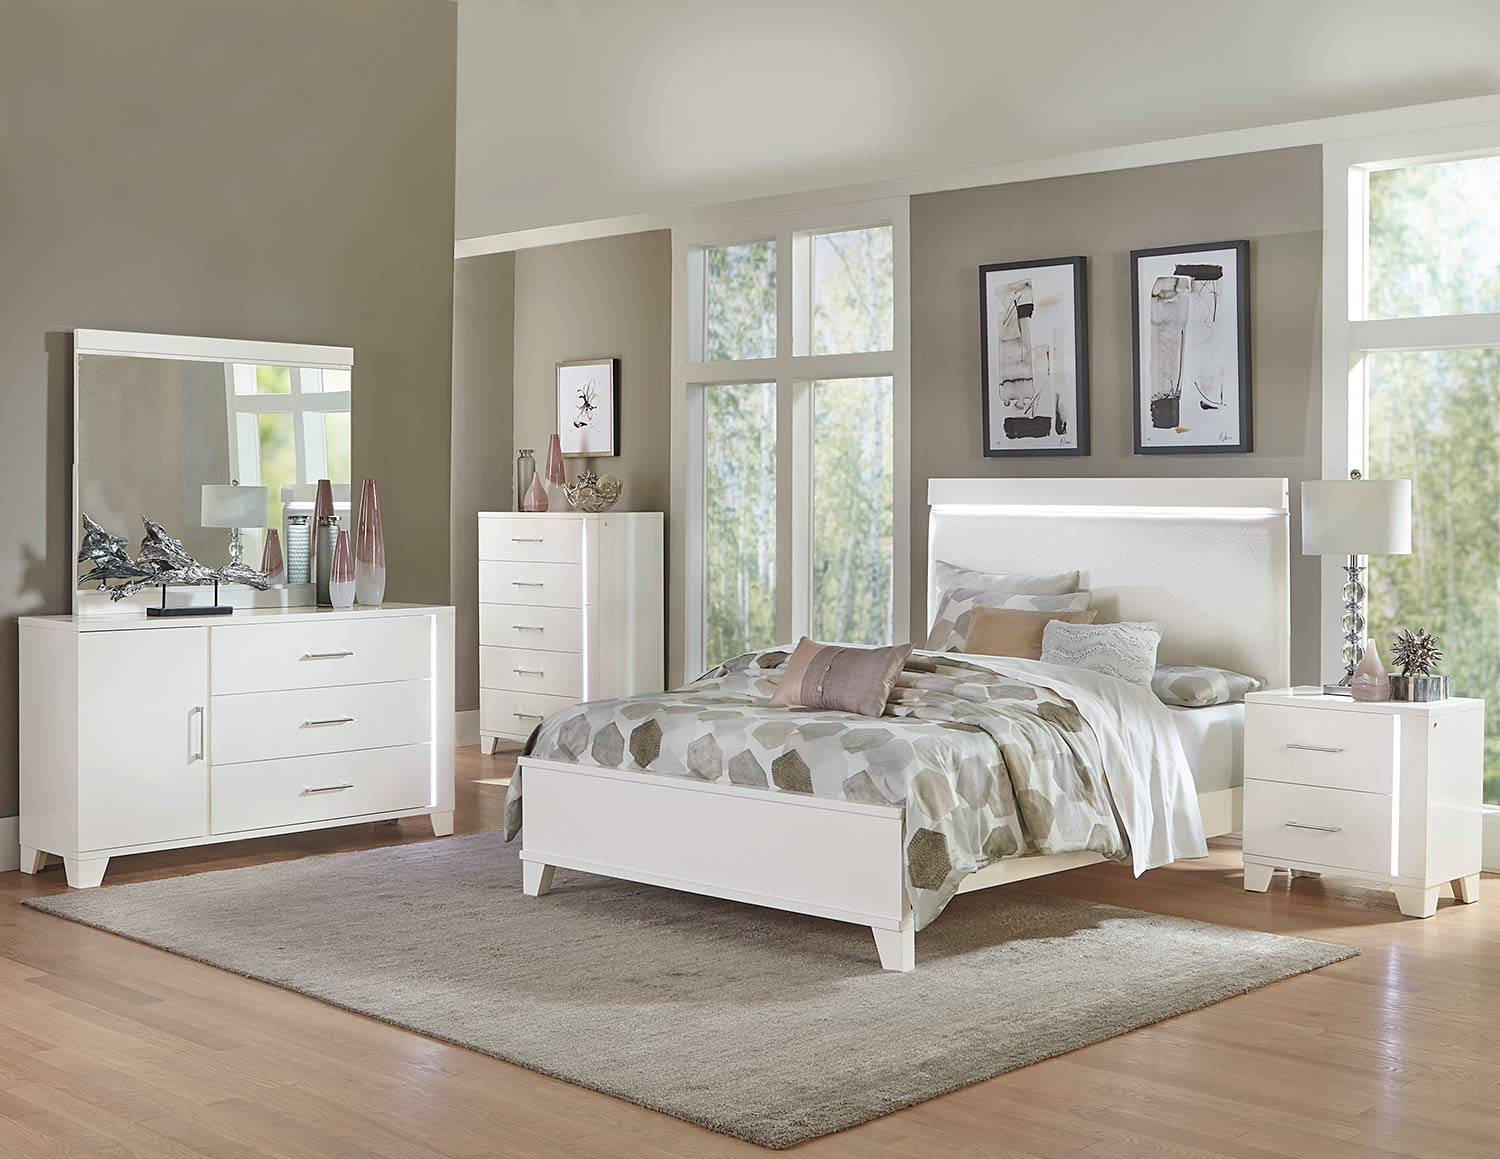 Homelegance Kerren or Keren Bedroom Set - White High Gloss